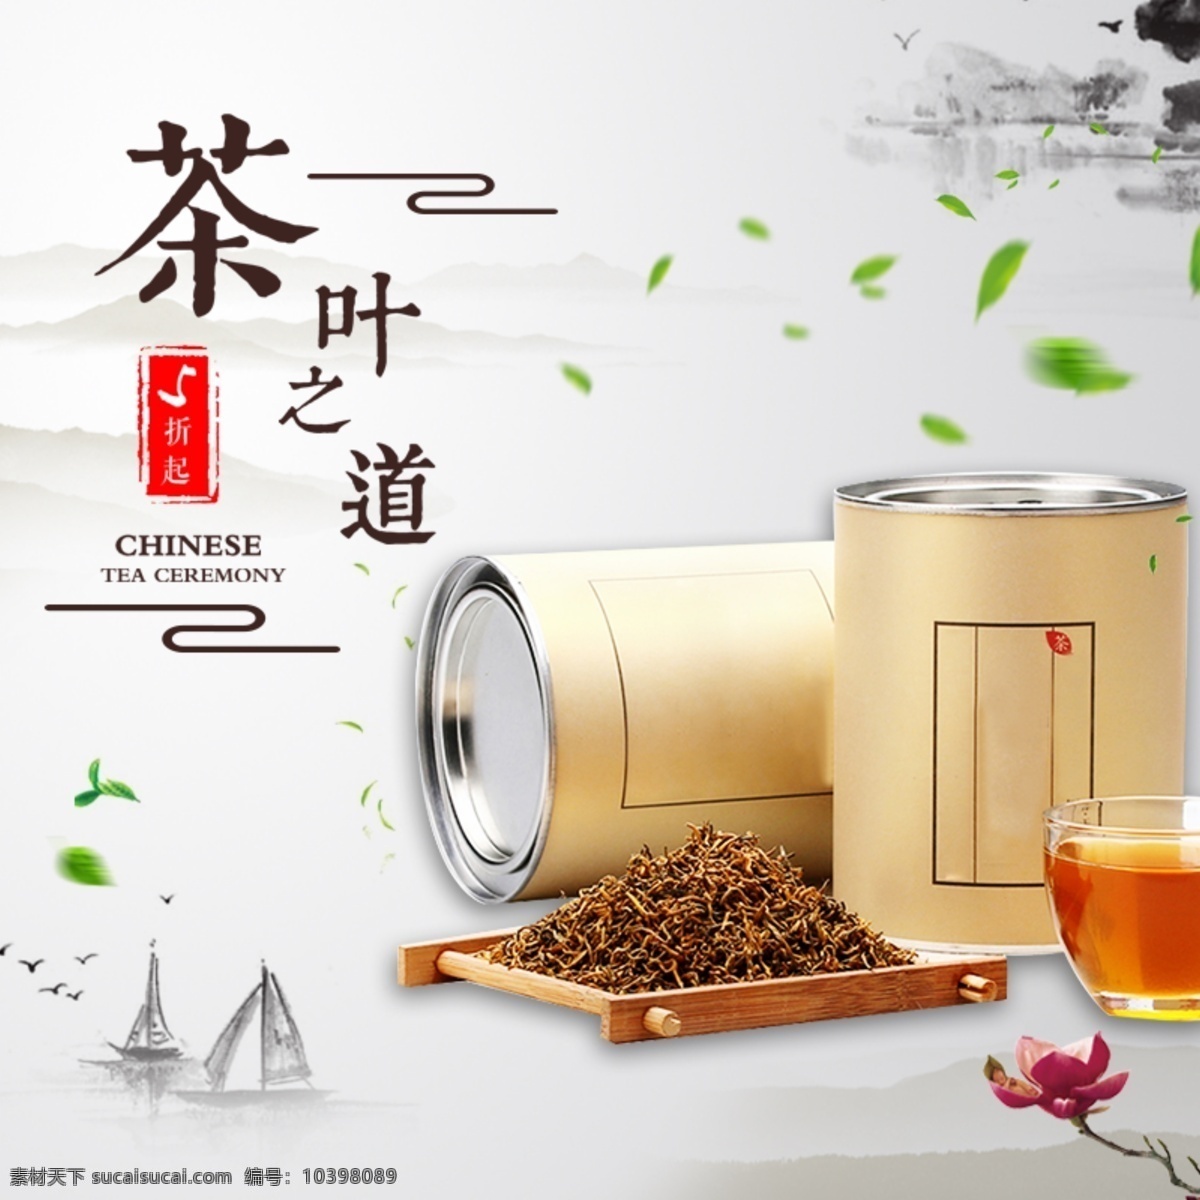 日常 复古 中国 风 茶叶 促销 优惠 主 图 中国风背景 茶叶广告图 天猫 淘宝